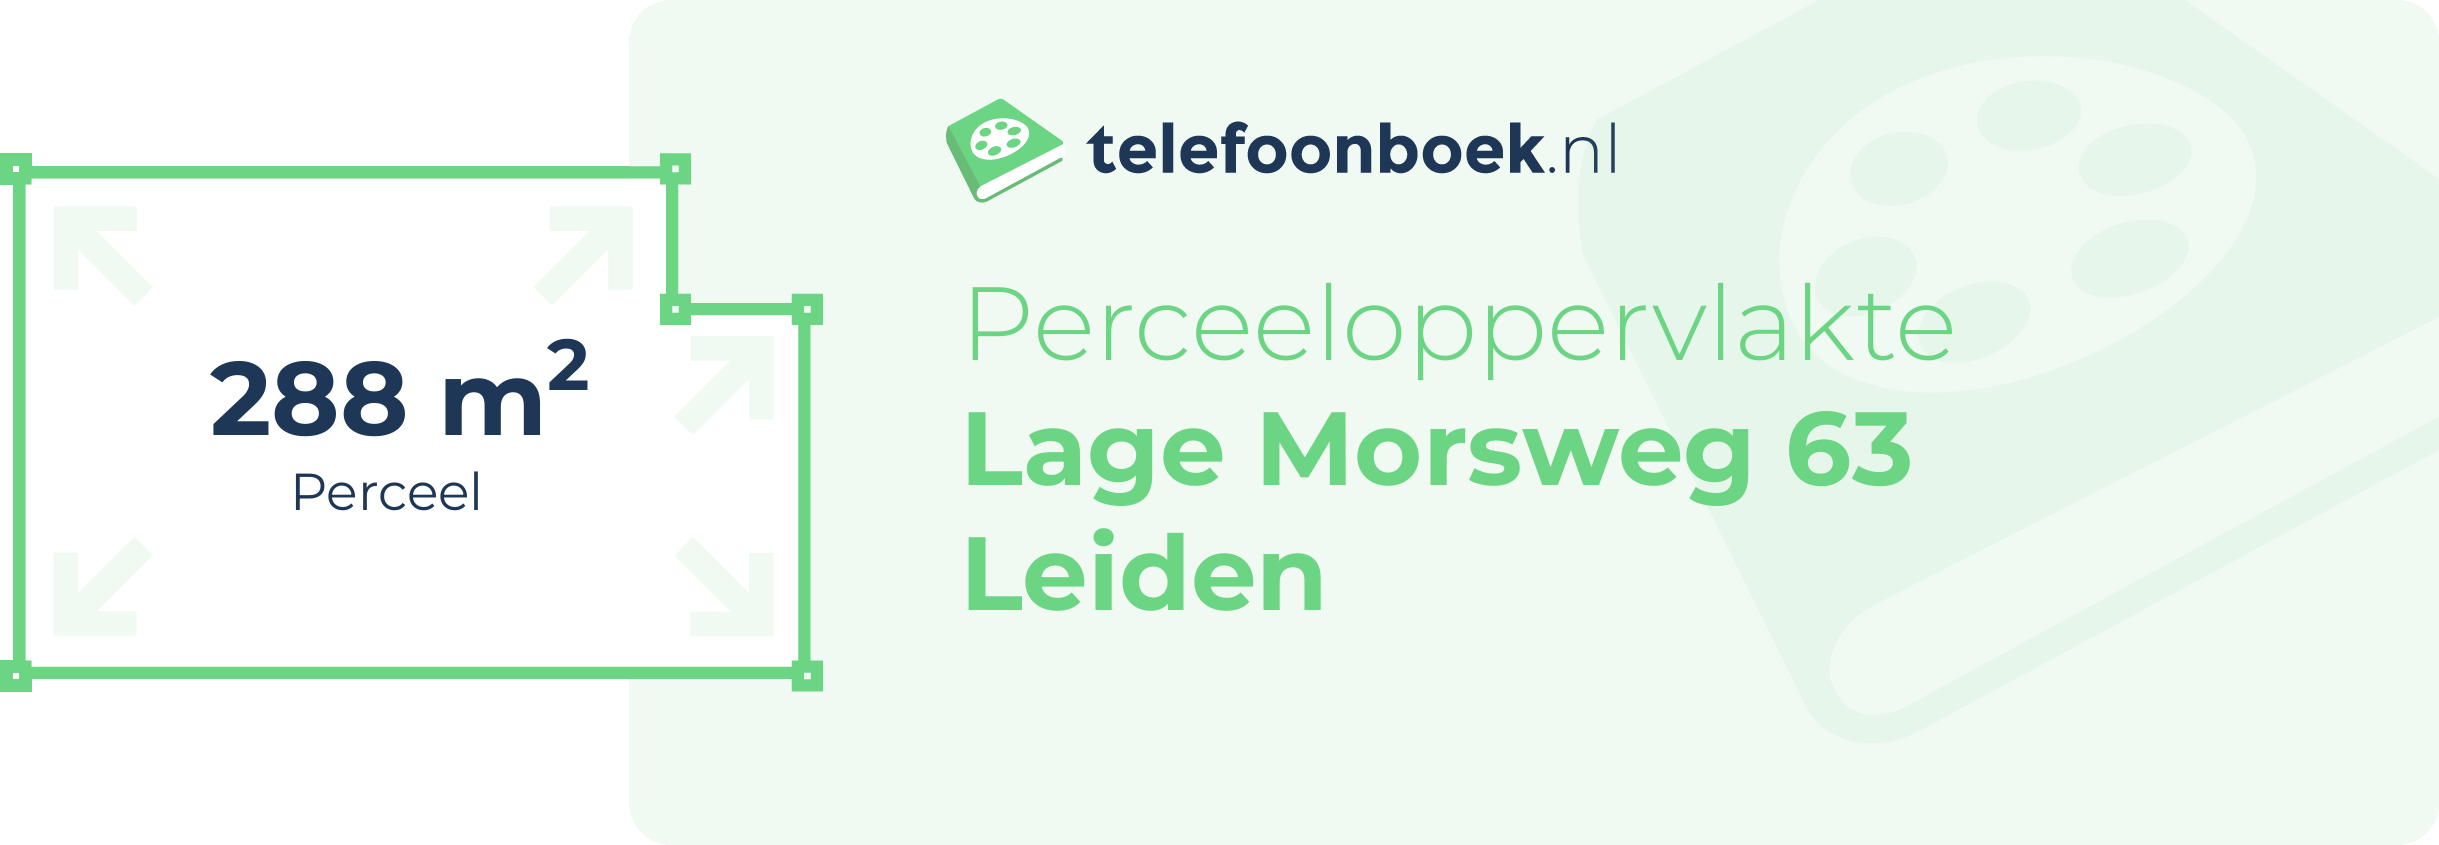 Perceeloppervlakte Lage Morsweg 63 Leiden